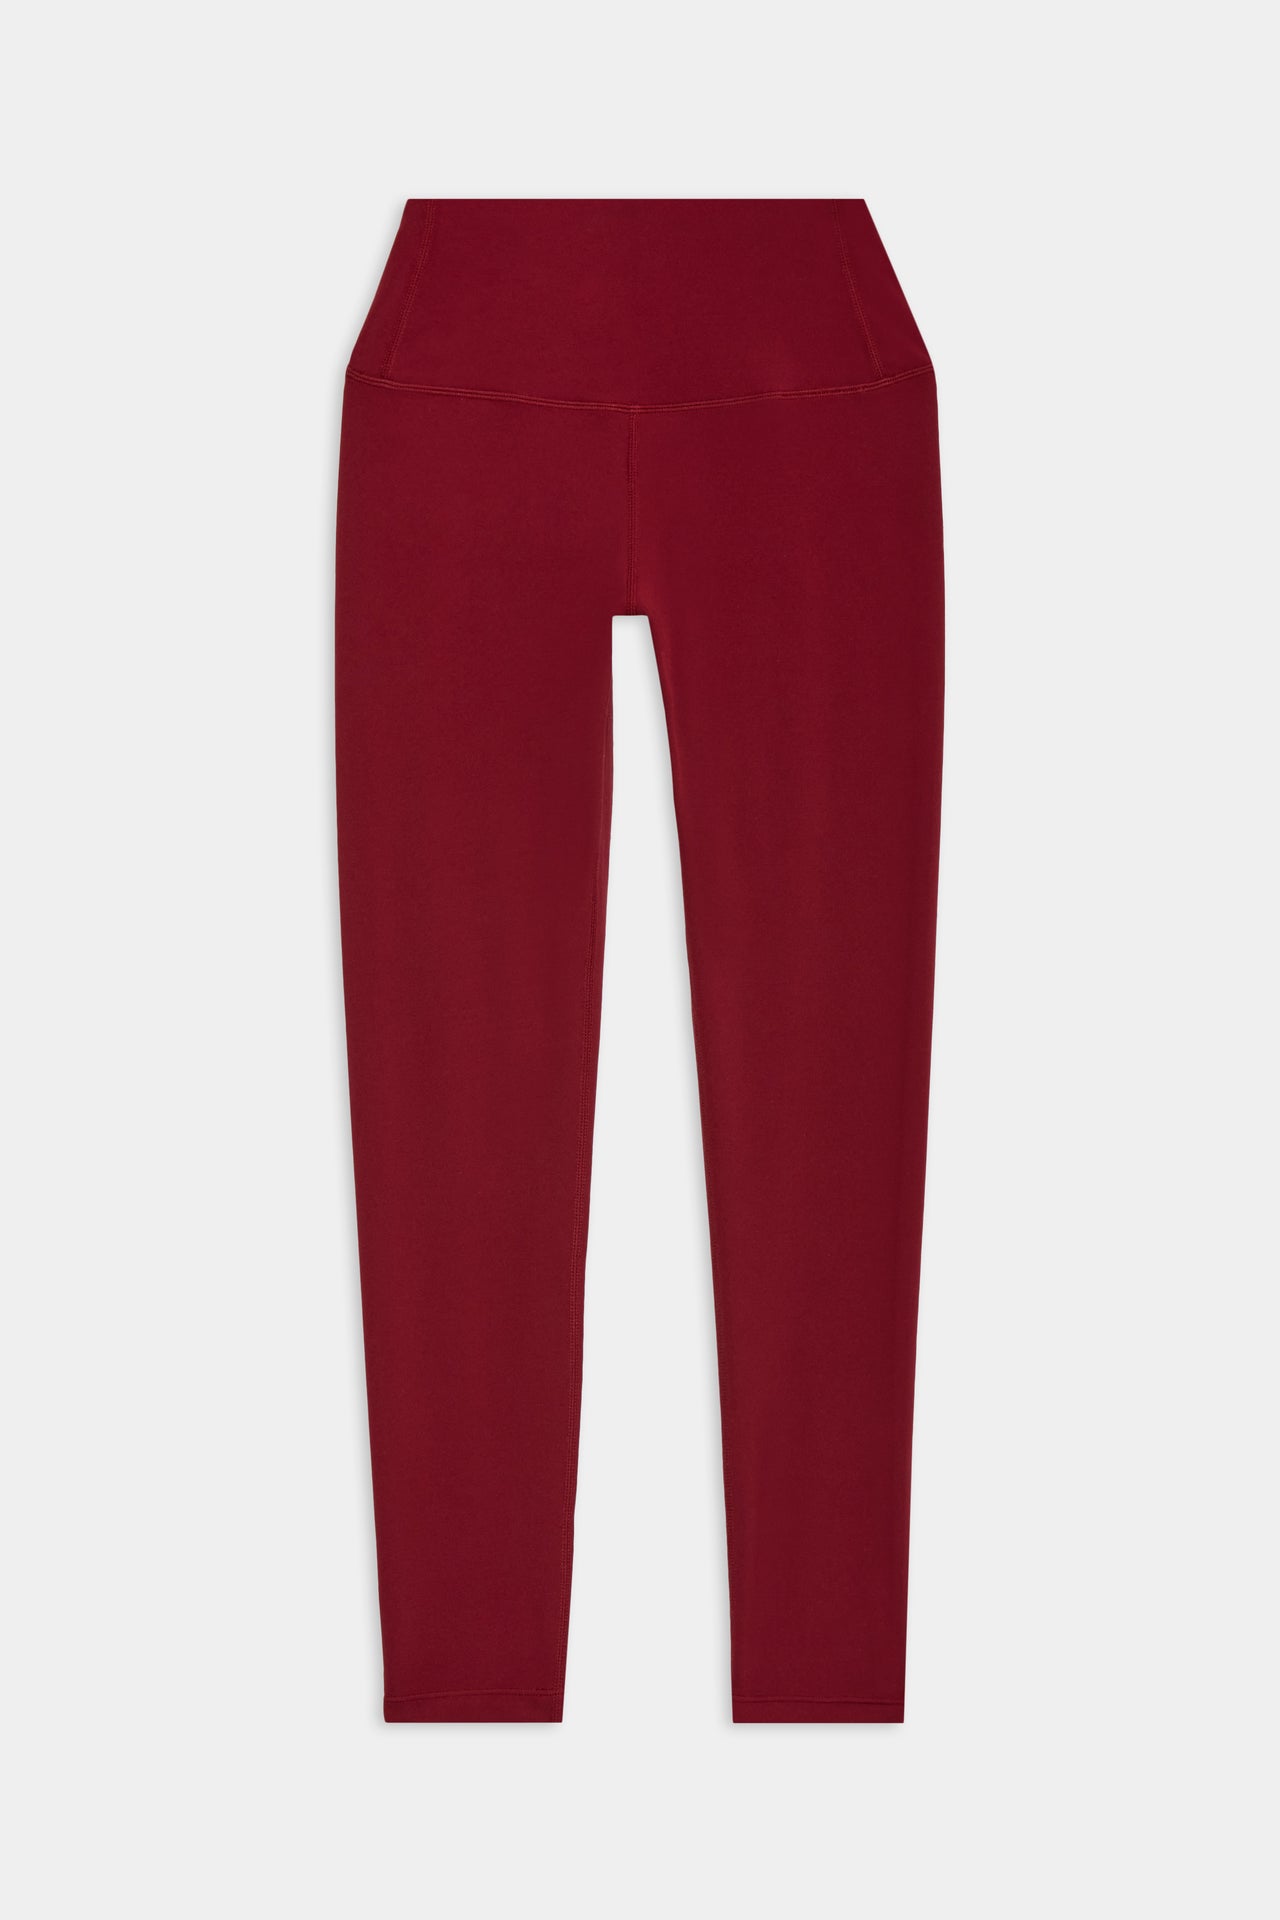 Flat view of dark red leggings